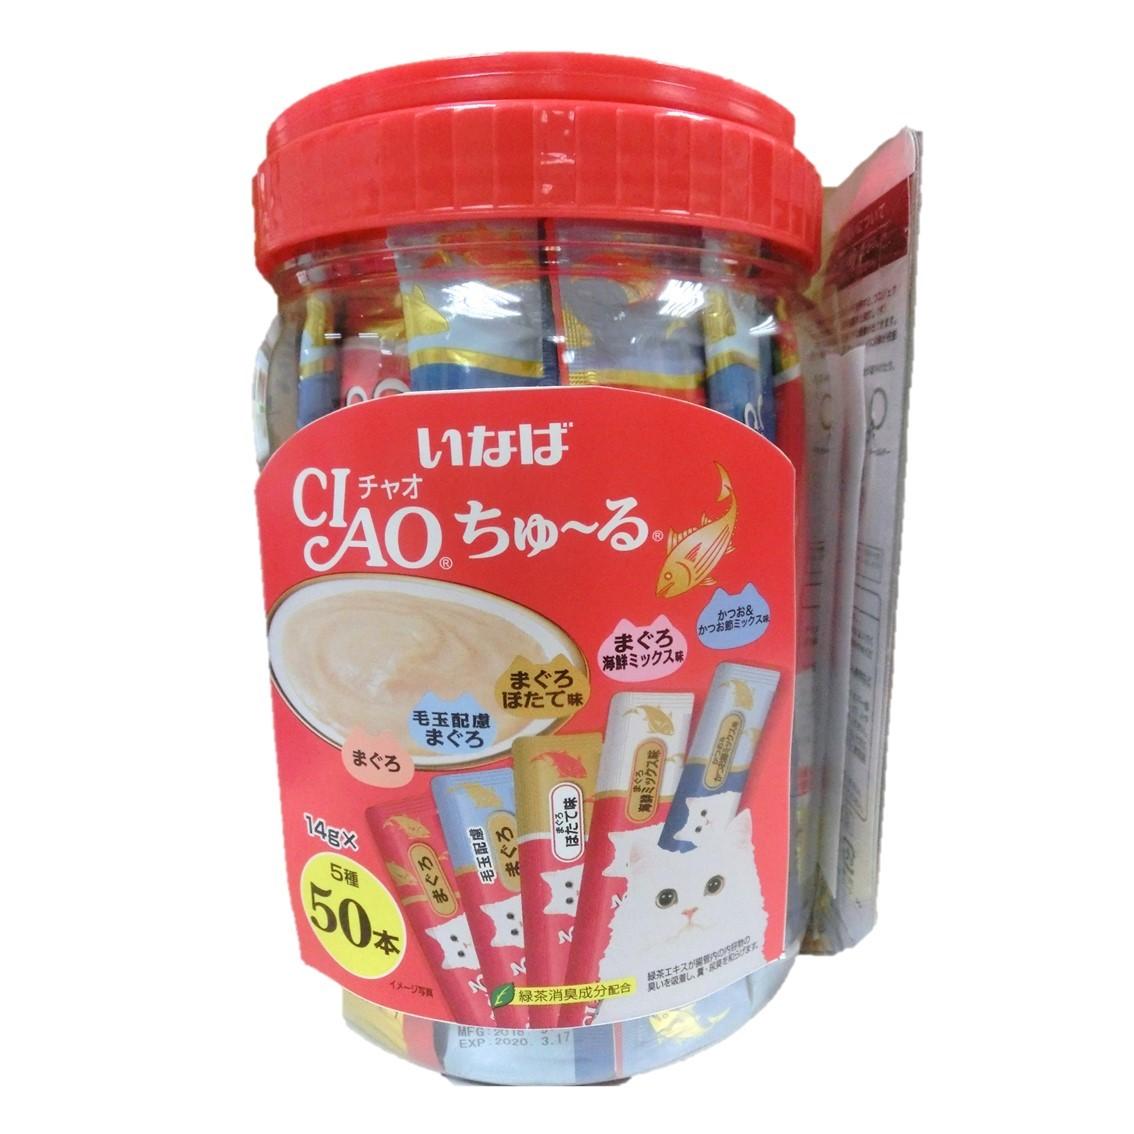 Sốt/ Snack thưởng Ciao Churu cho mèo Hộp 50 thanh - mix 5 vị cá